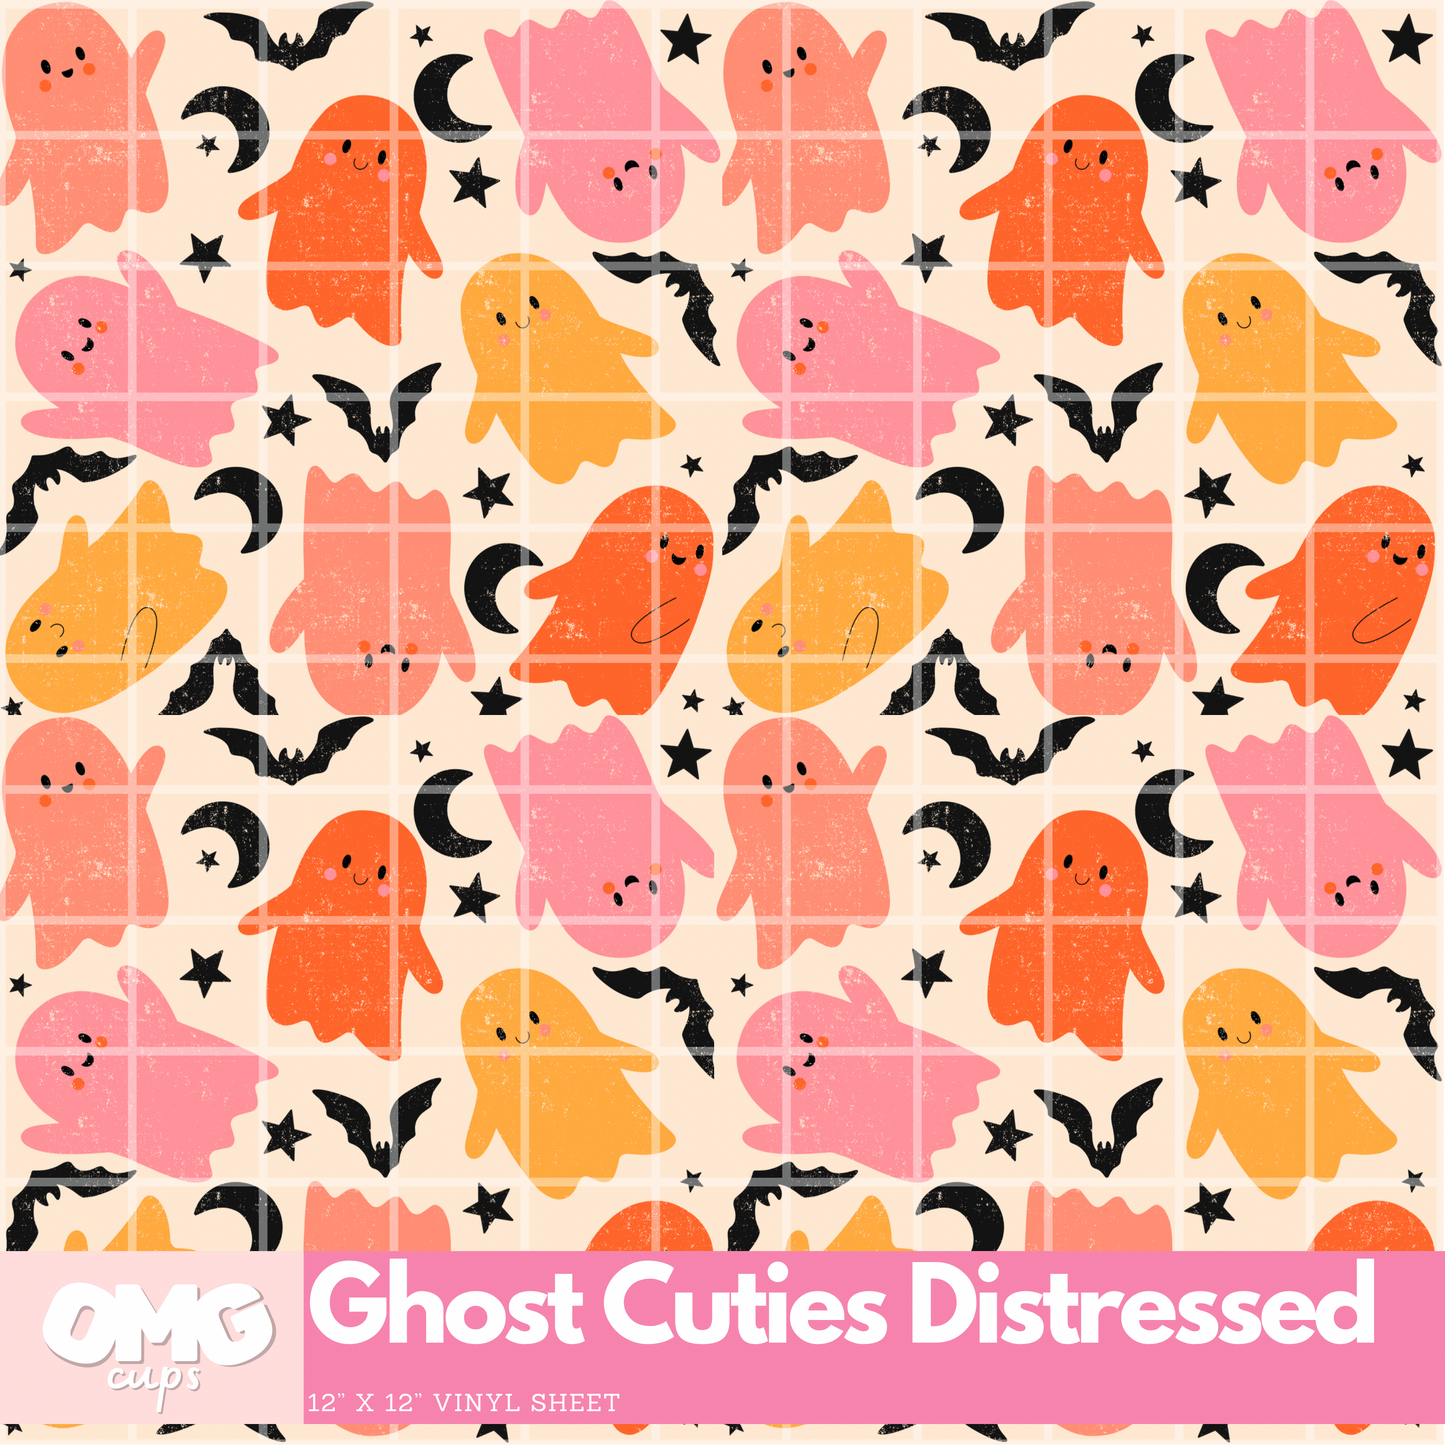 Ghost Cuties Distressed: 12x12 Vinyl Sheet